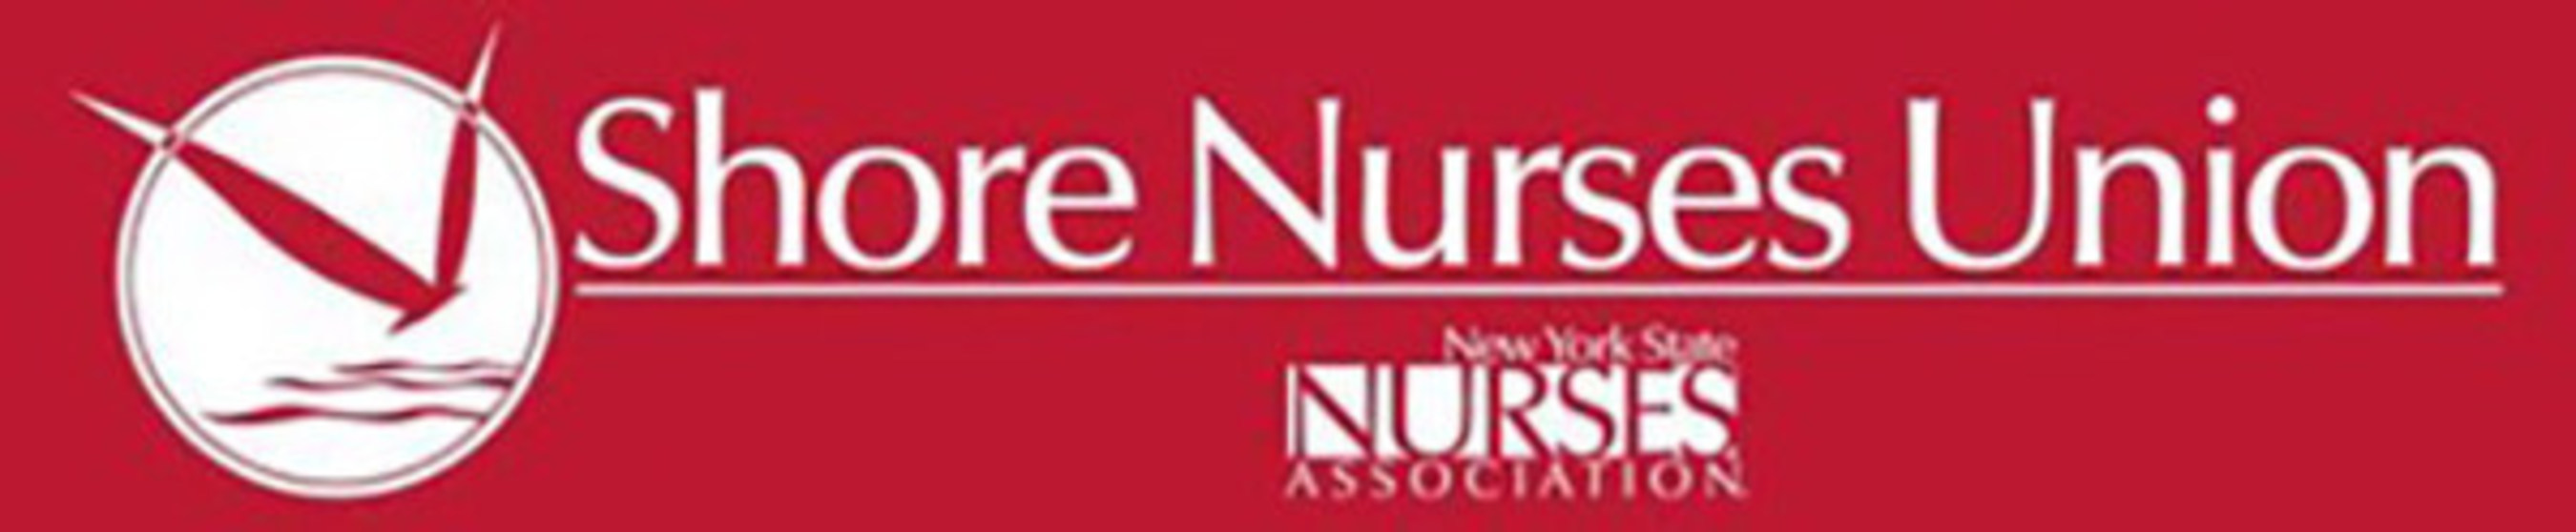 Shore Nurses Union Logo